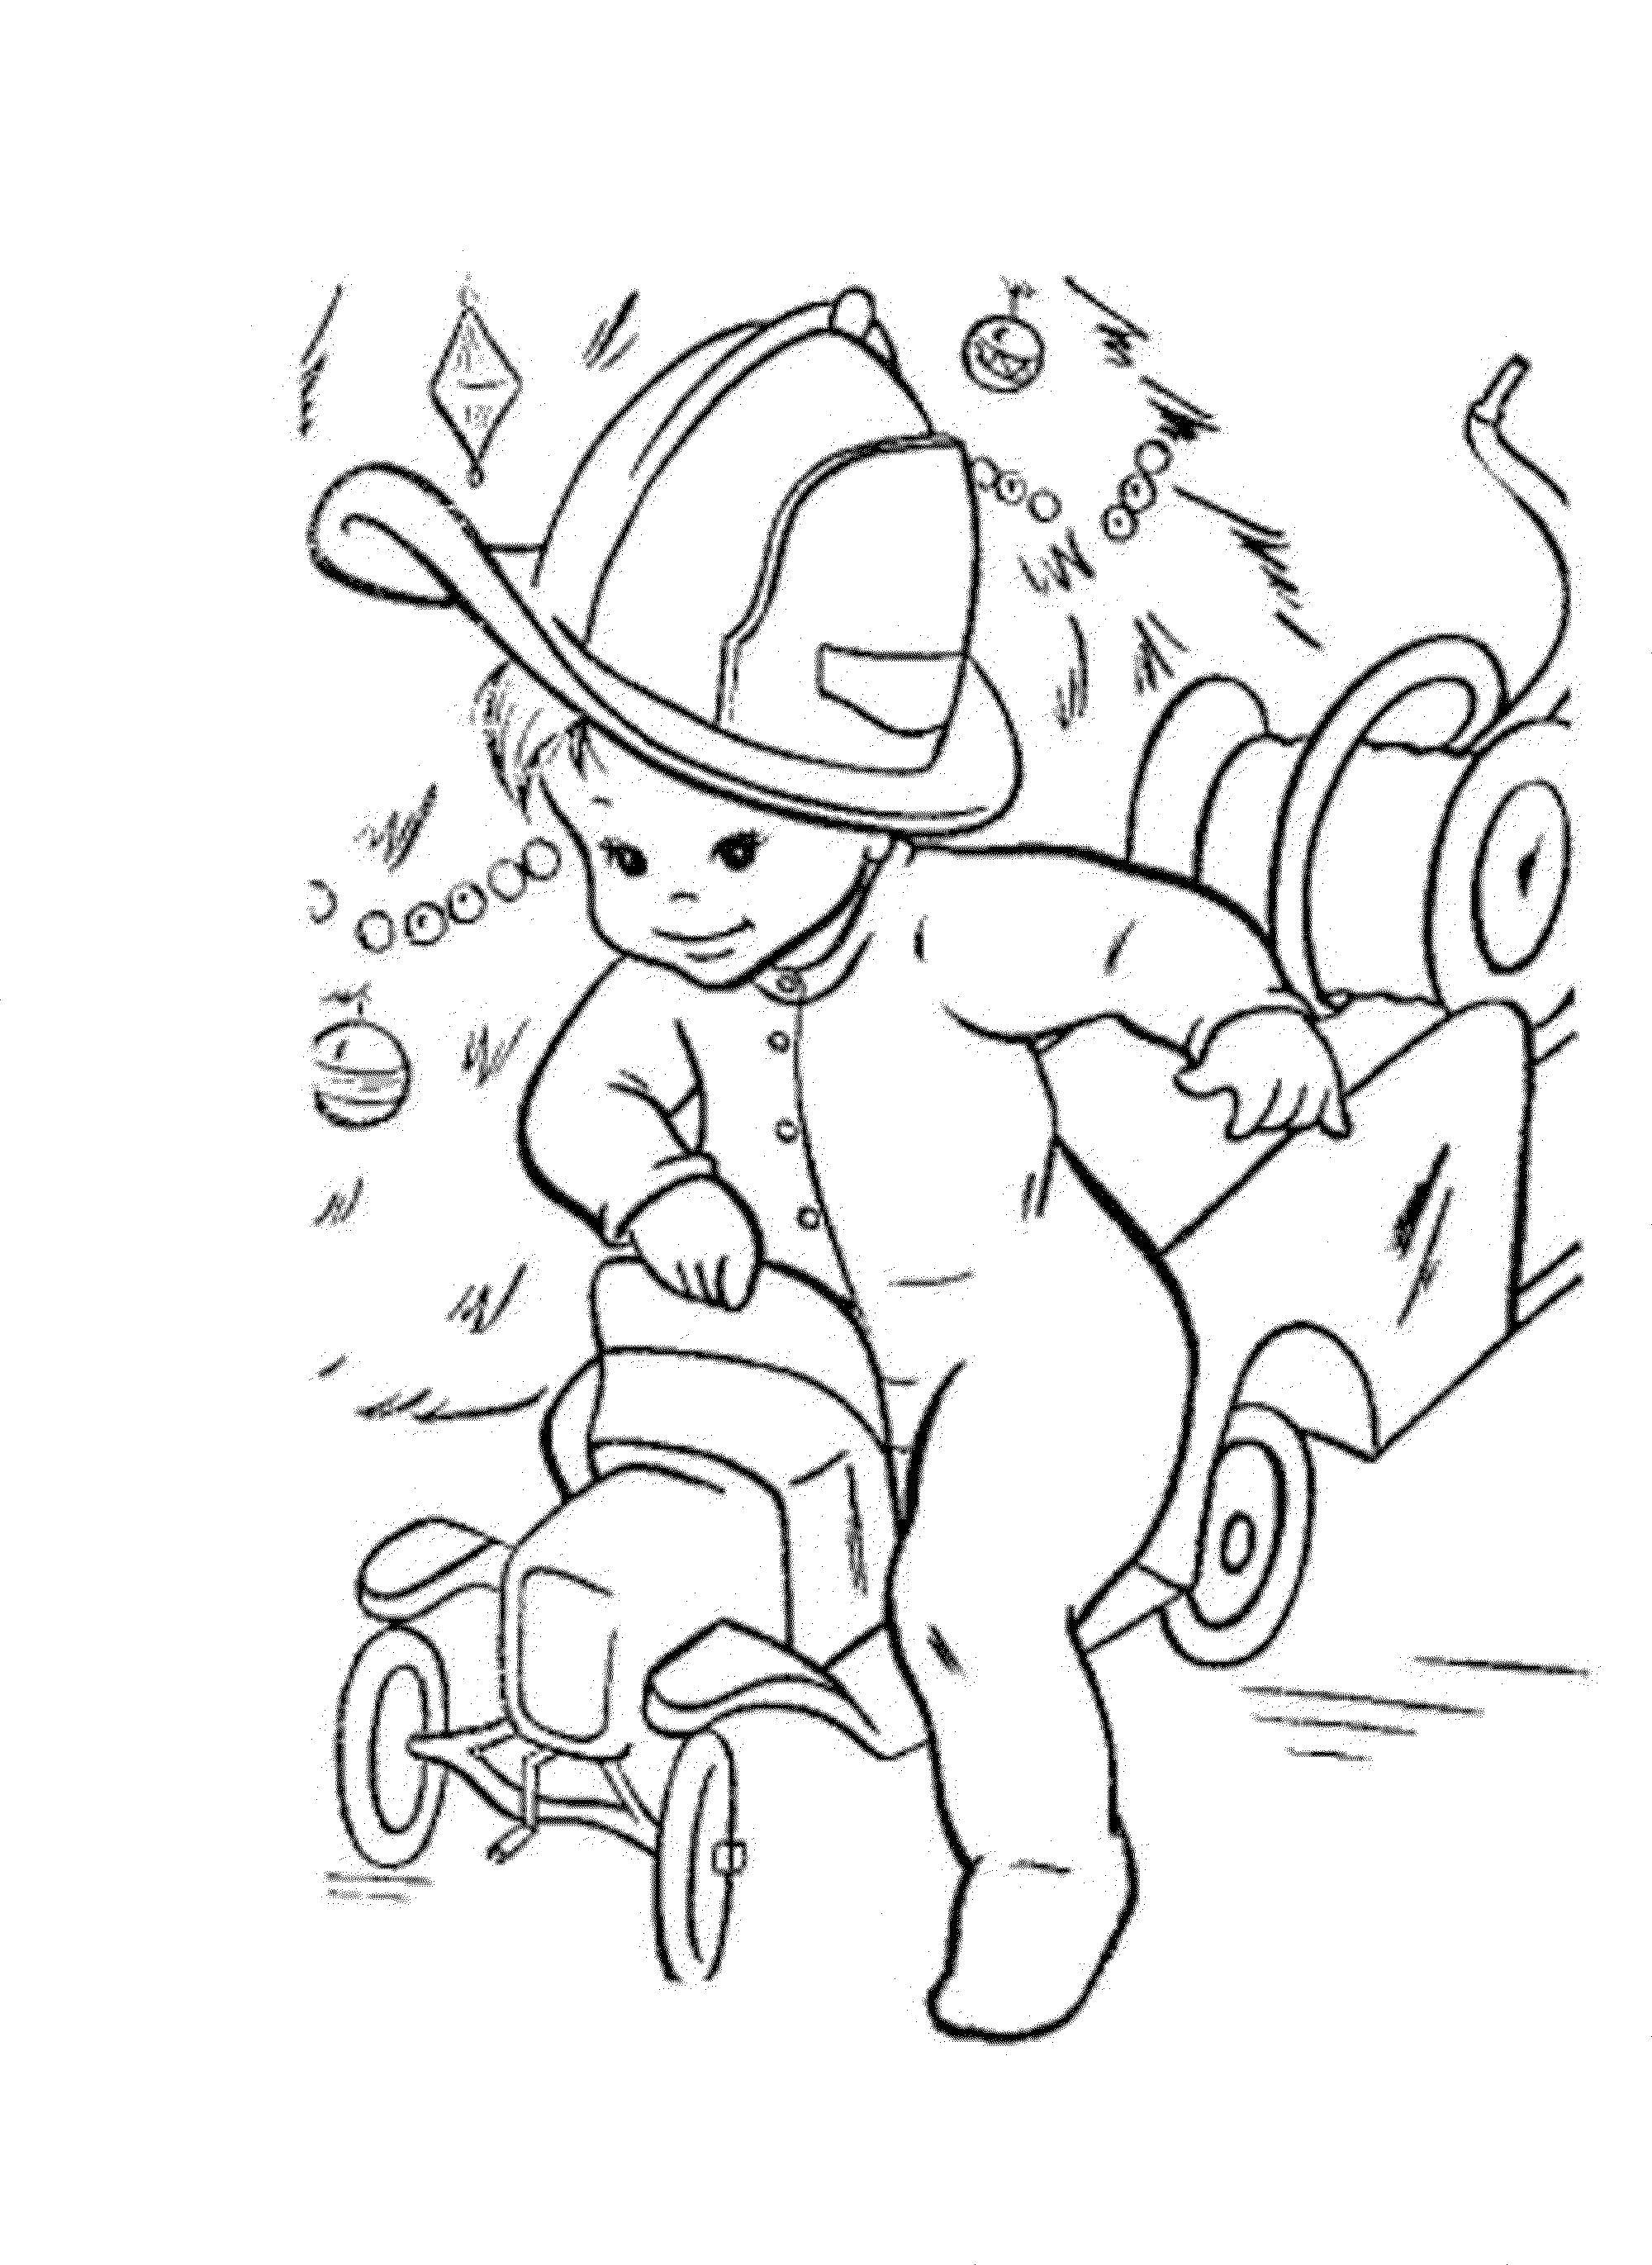 Название: Раскраска Ребенок катается на пожарной машине. Категория: Люди. Теги: ребенок, машина.